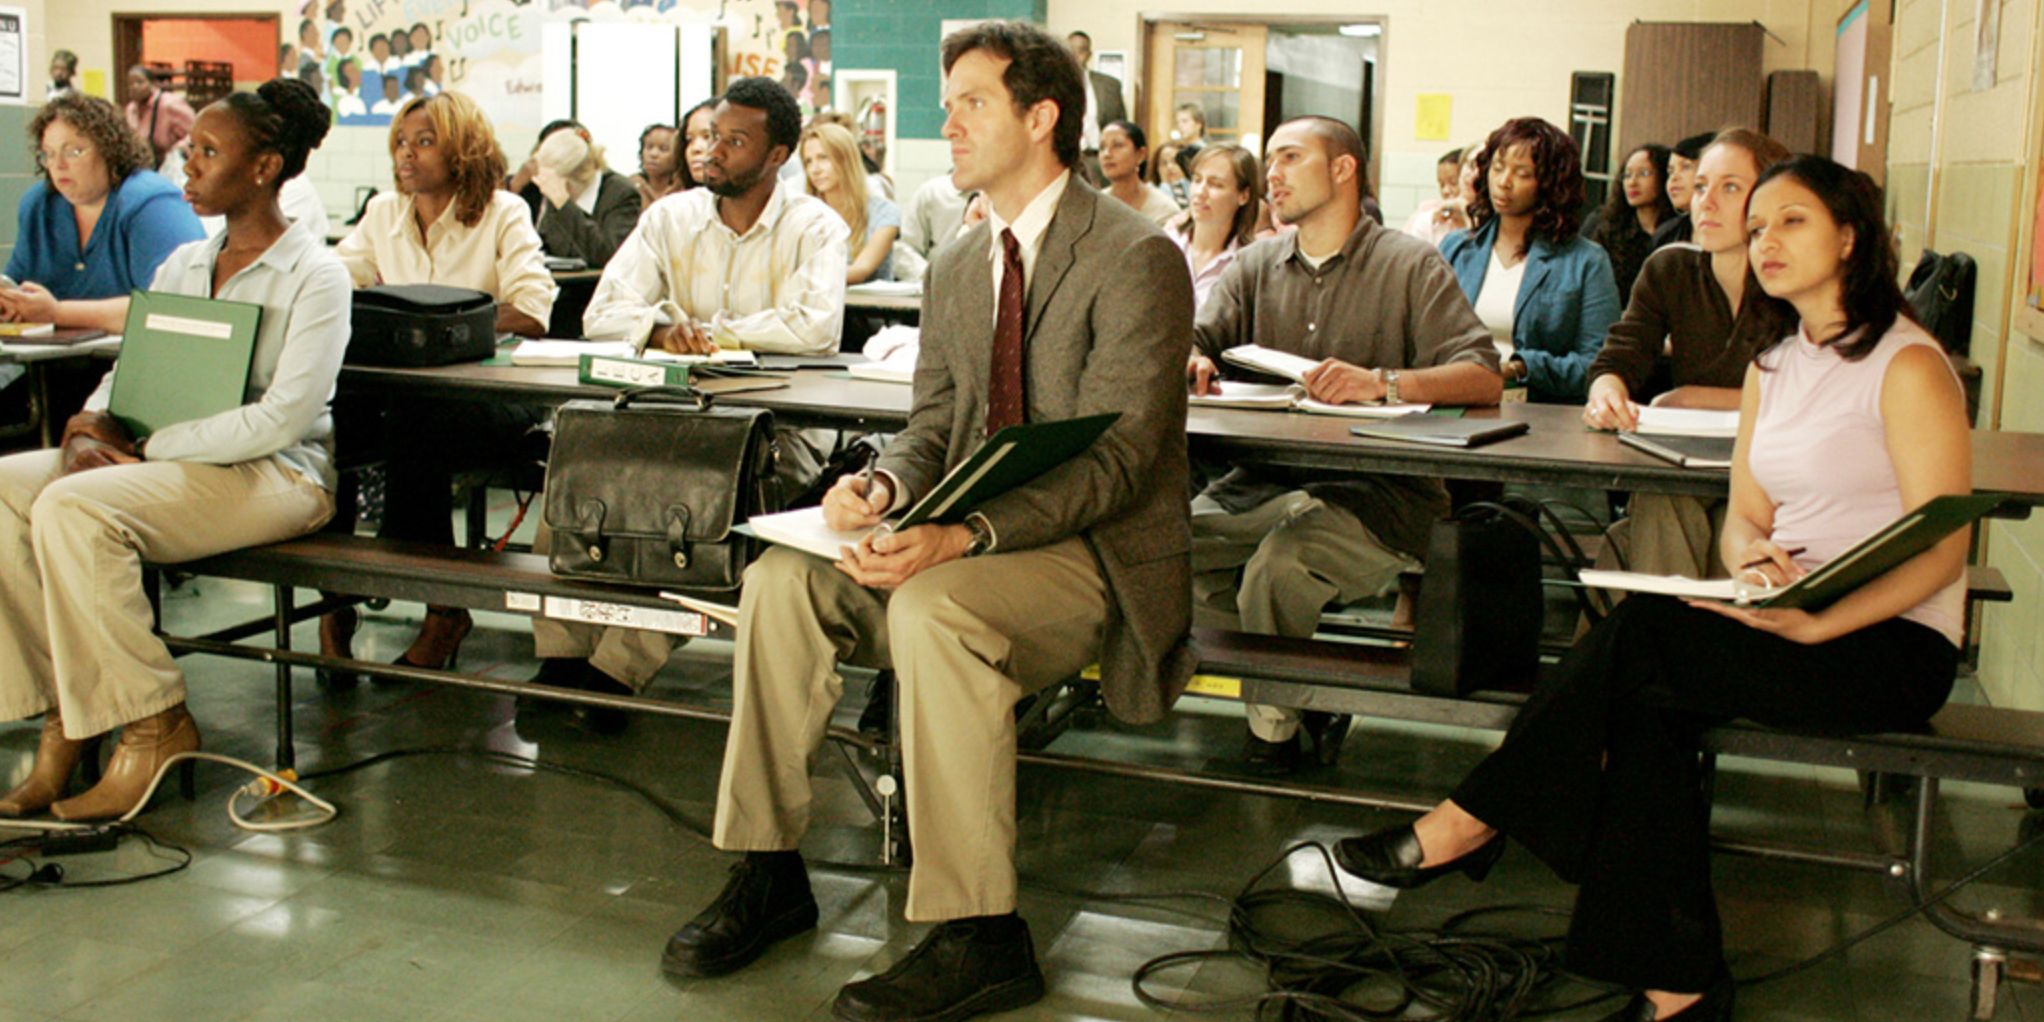 Prez in school meeting in Season 4 of The Wire